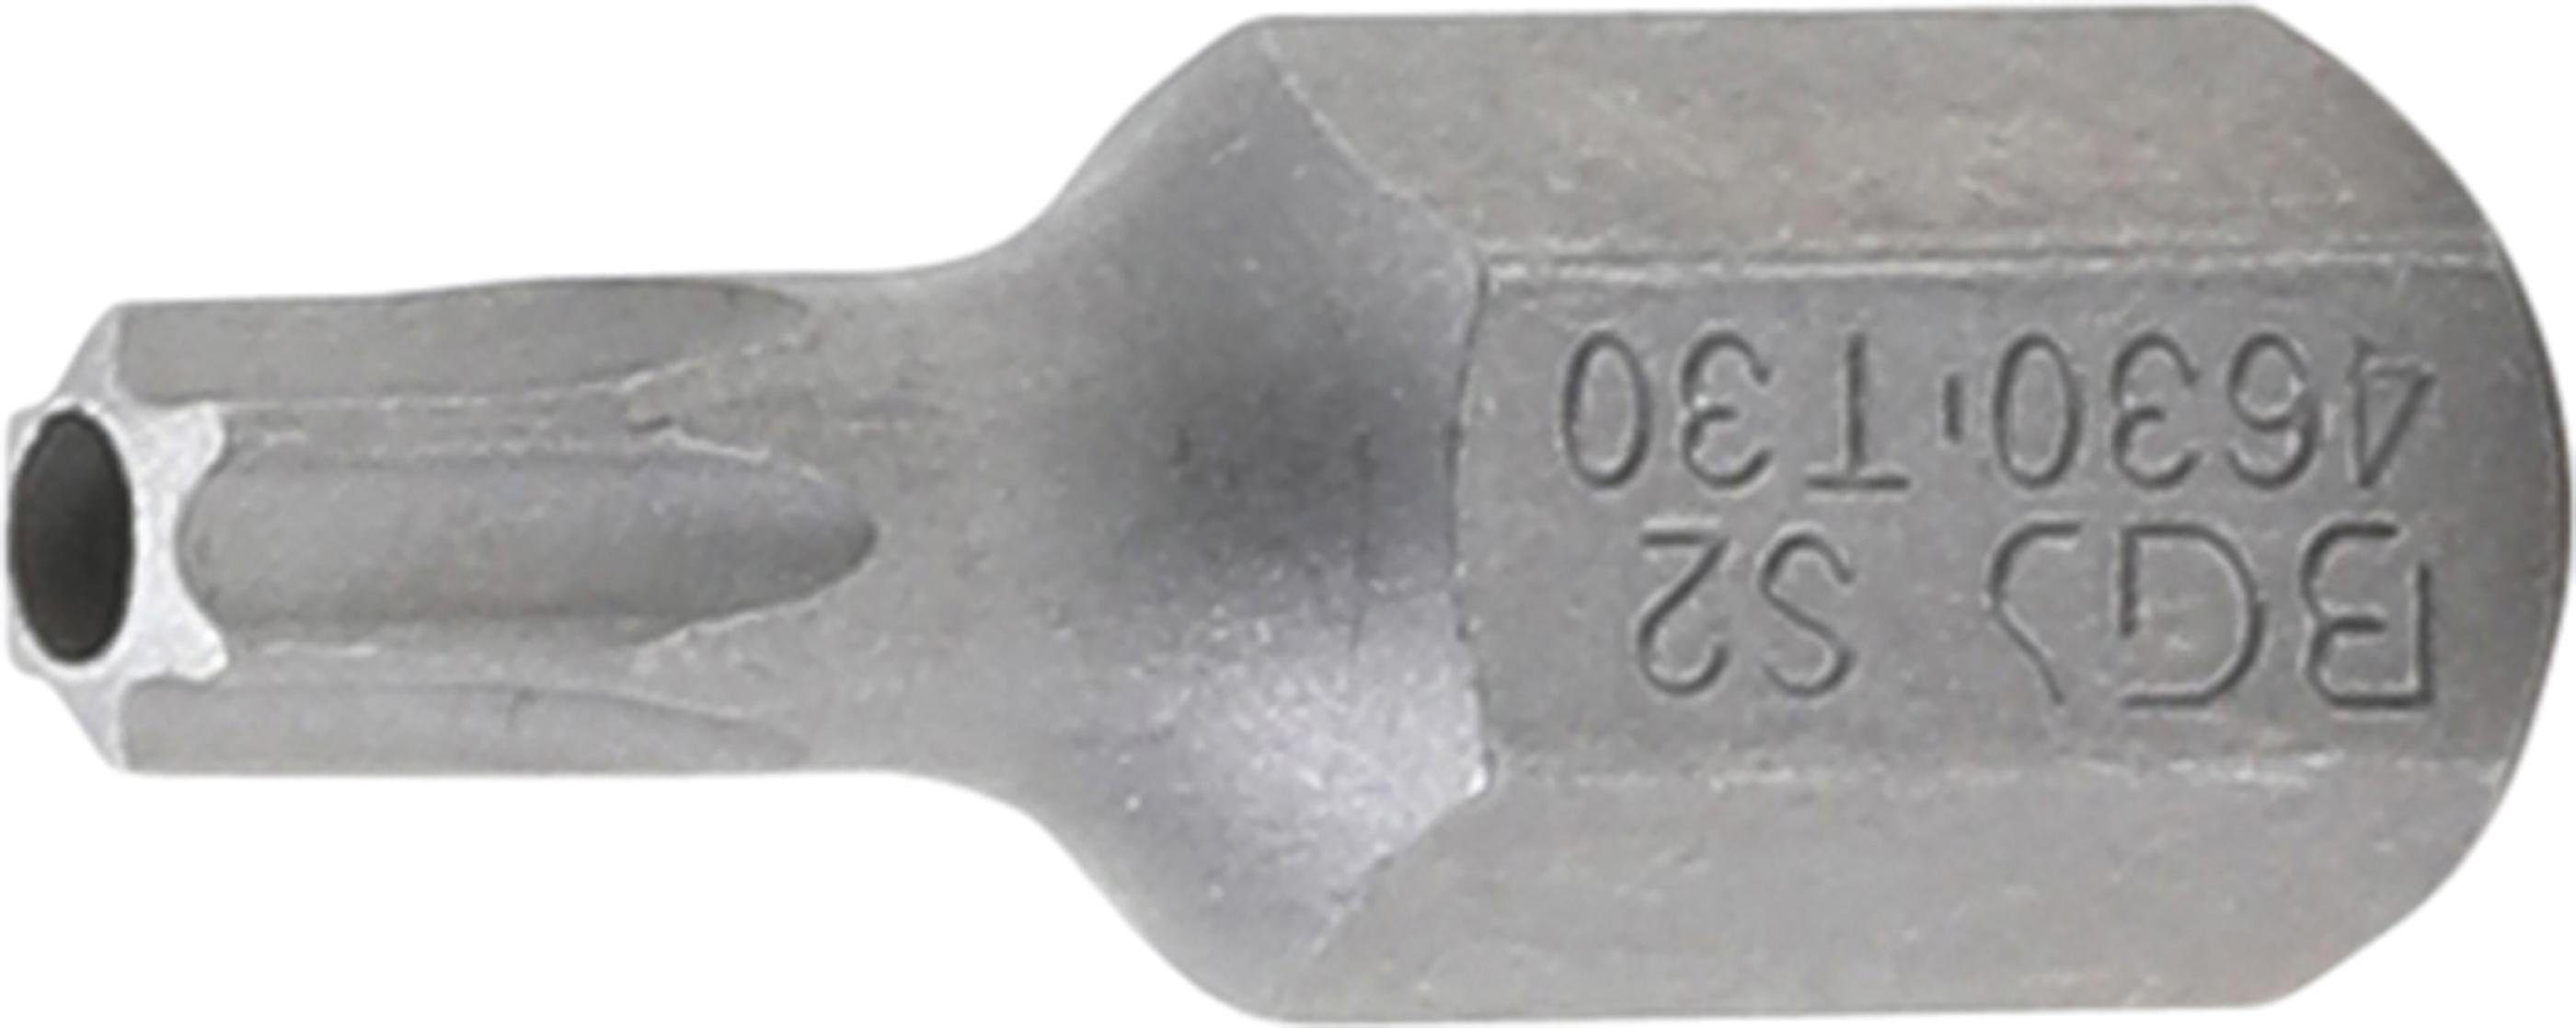 BGS technic Bit-Schraubendreher Bit, (für Außensechskant mm T-Profil Torx) (3/8), 10 Antrieb T30 Bohrung mit